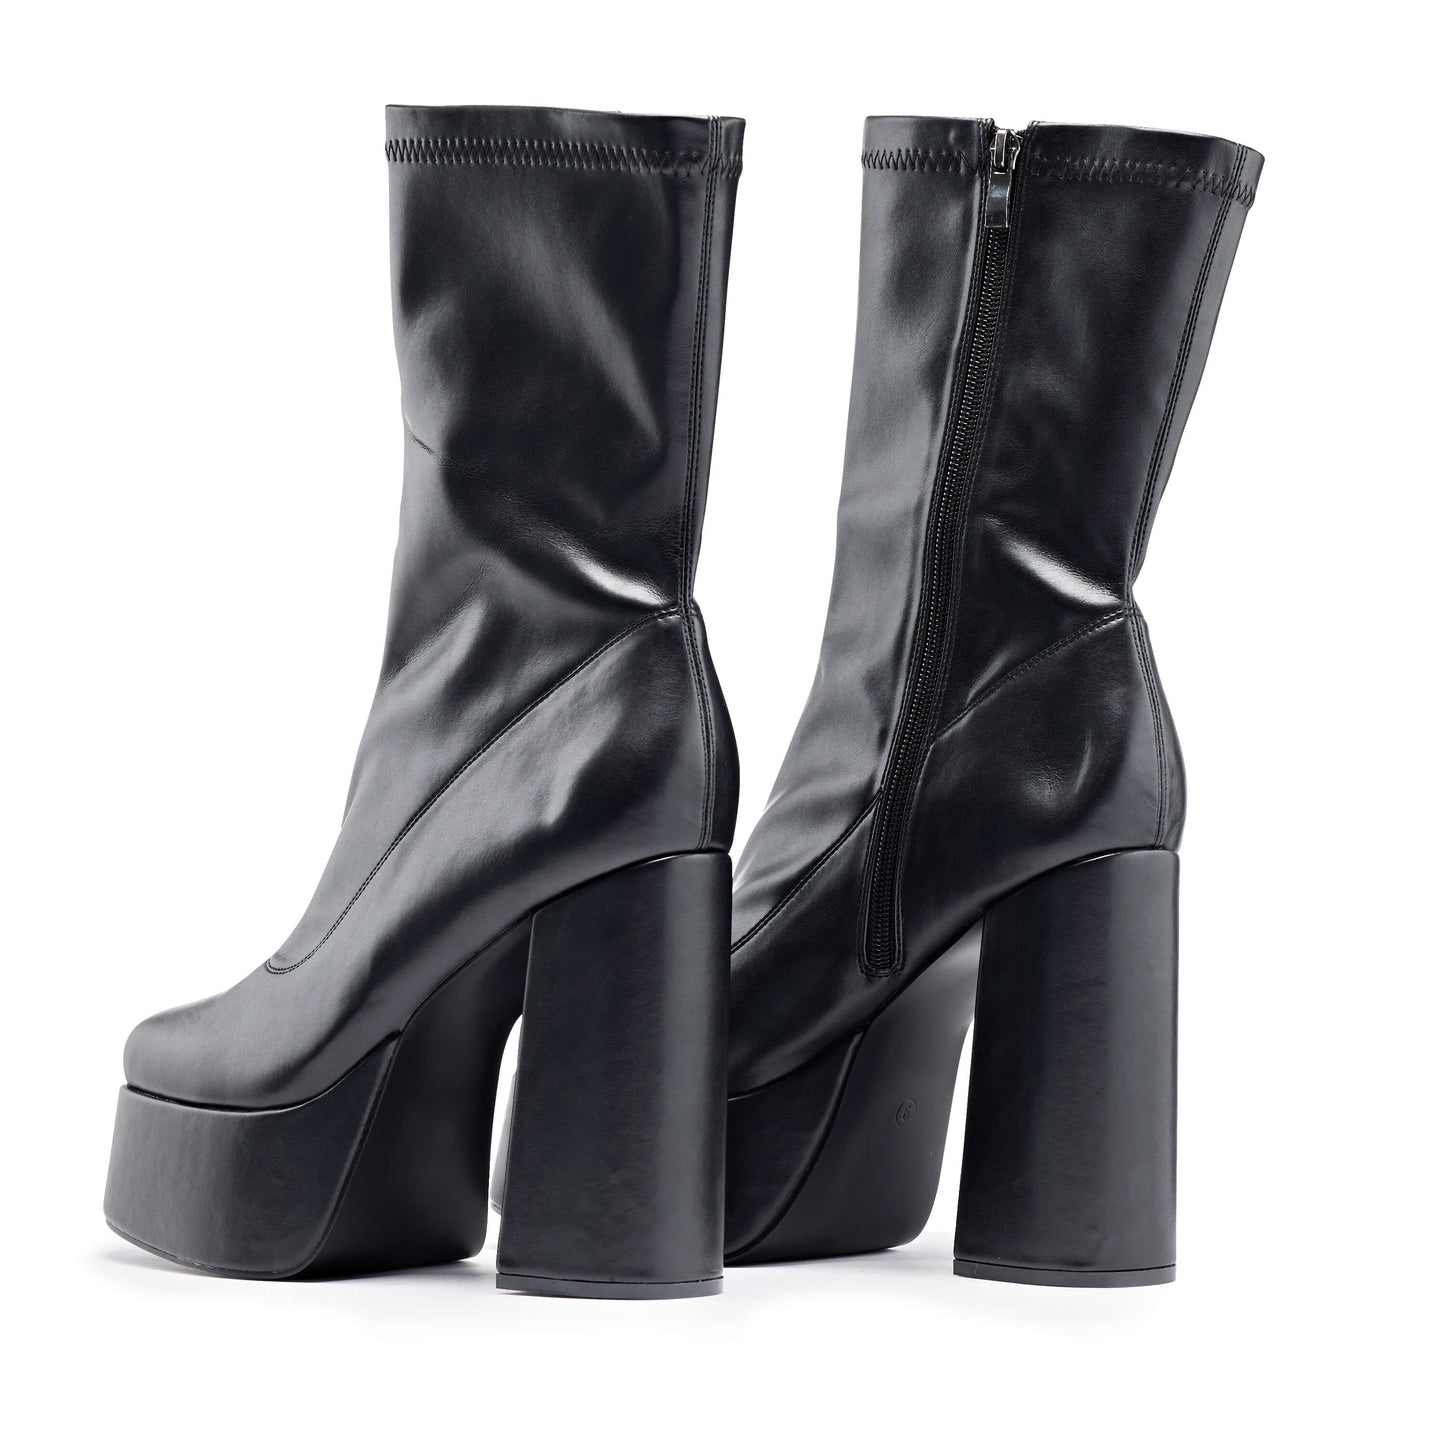 Delano Men's Black Platform Heeled Boots - Ankle Boots - KOI Footwear - Black - Back View